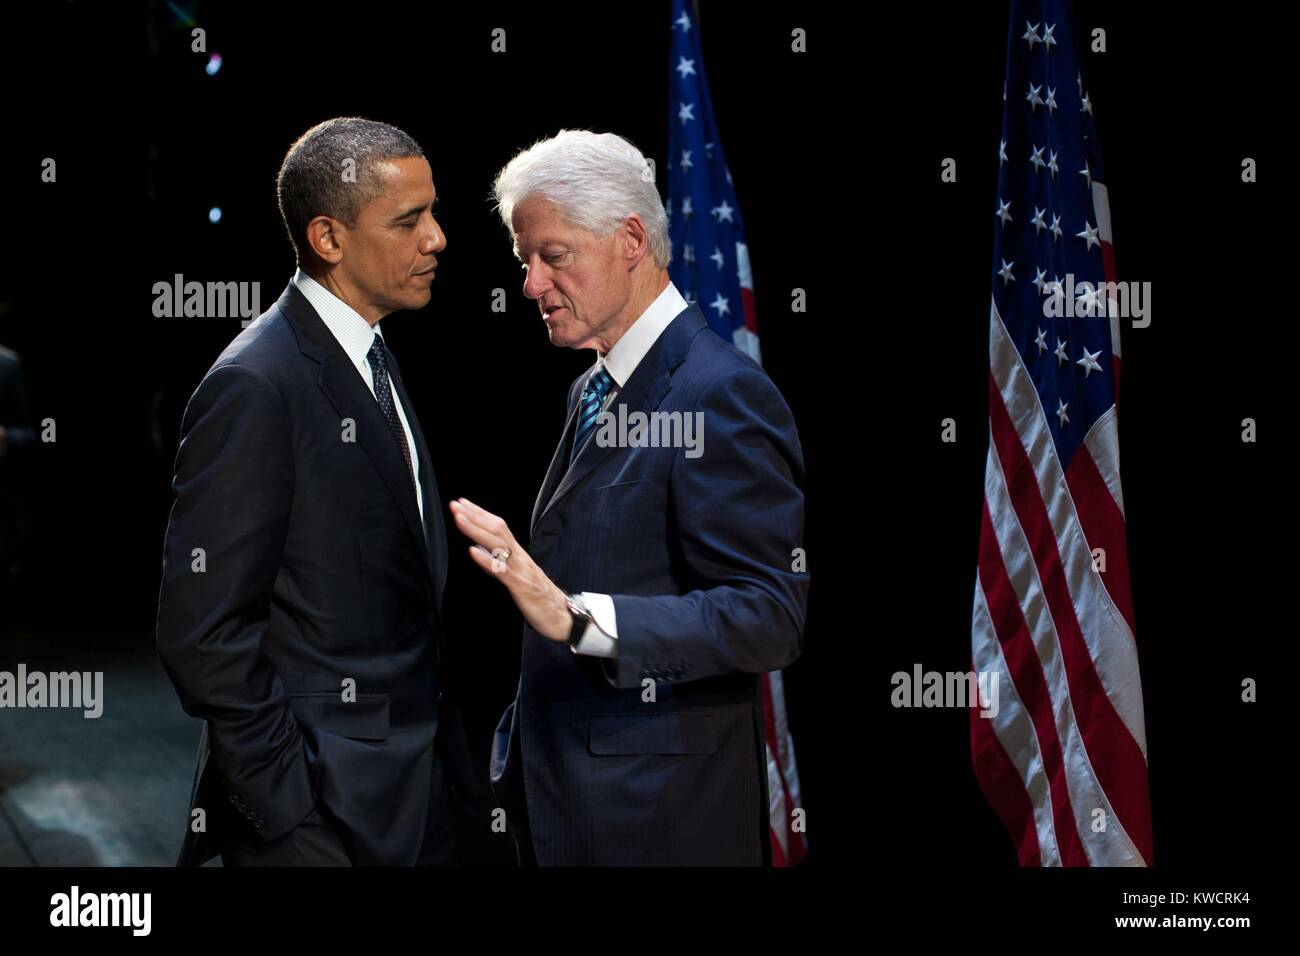 Präsident Barack Obama mit dem früheren Präsidenten Bill Clinton in einem Wahljahr Fundraiser. Clinton hat Obama an der New Amsterdam Theatre in New York, Juni 4, 2012. (BSLOC 2015 3 59) Stockfoto